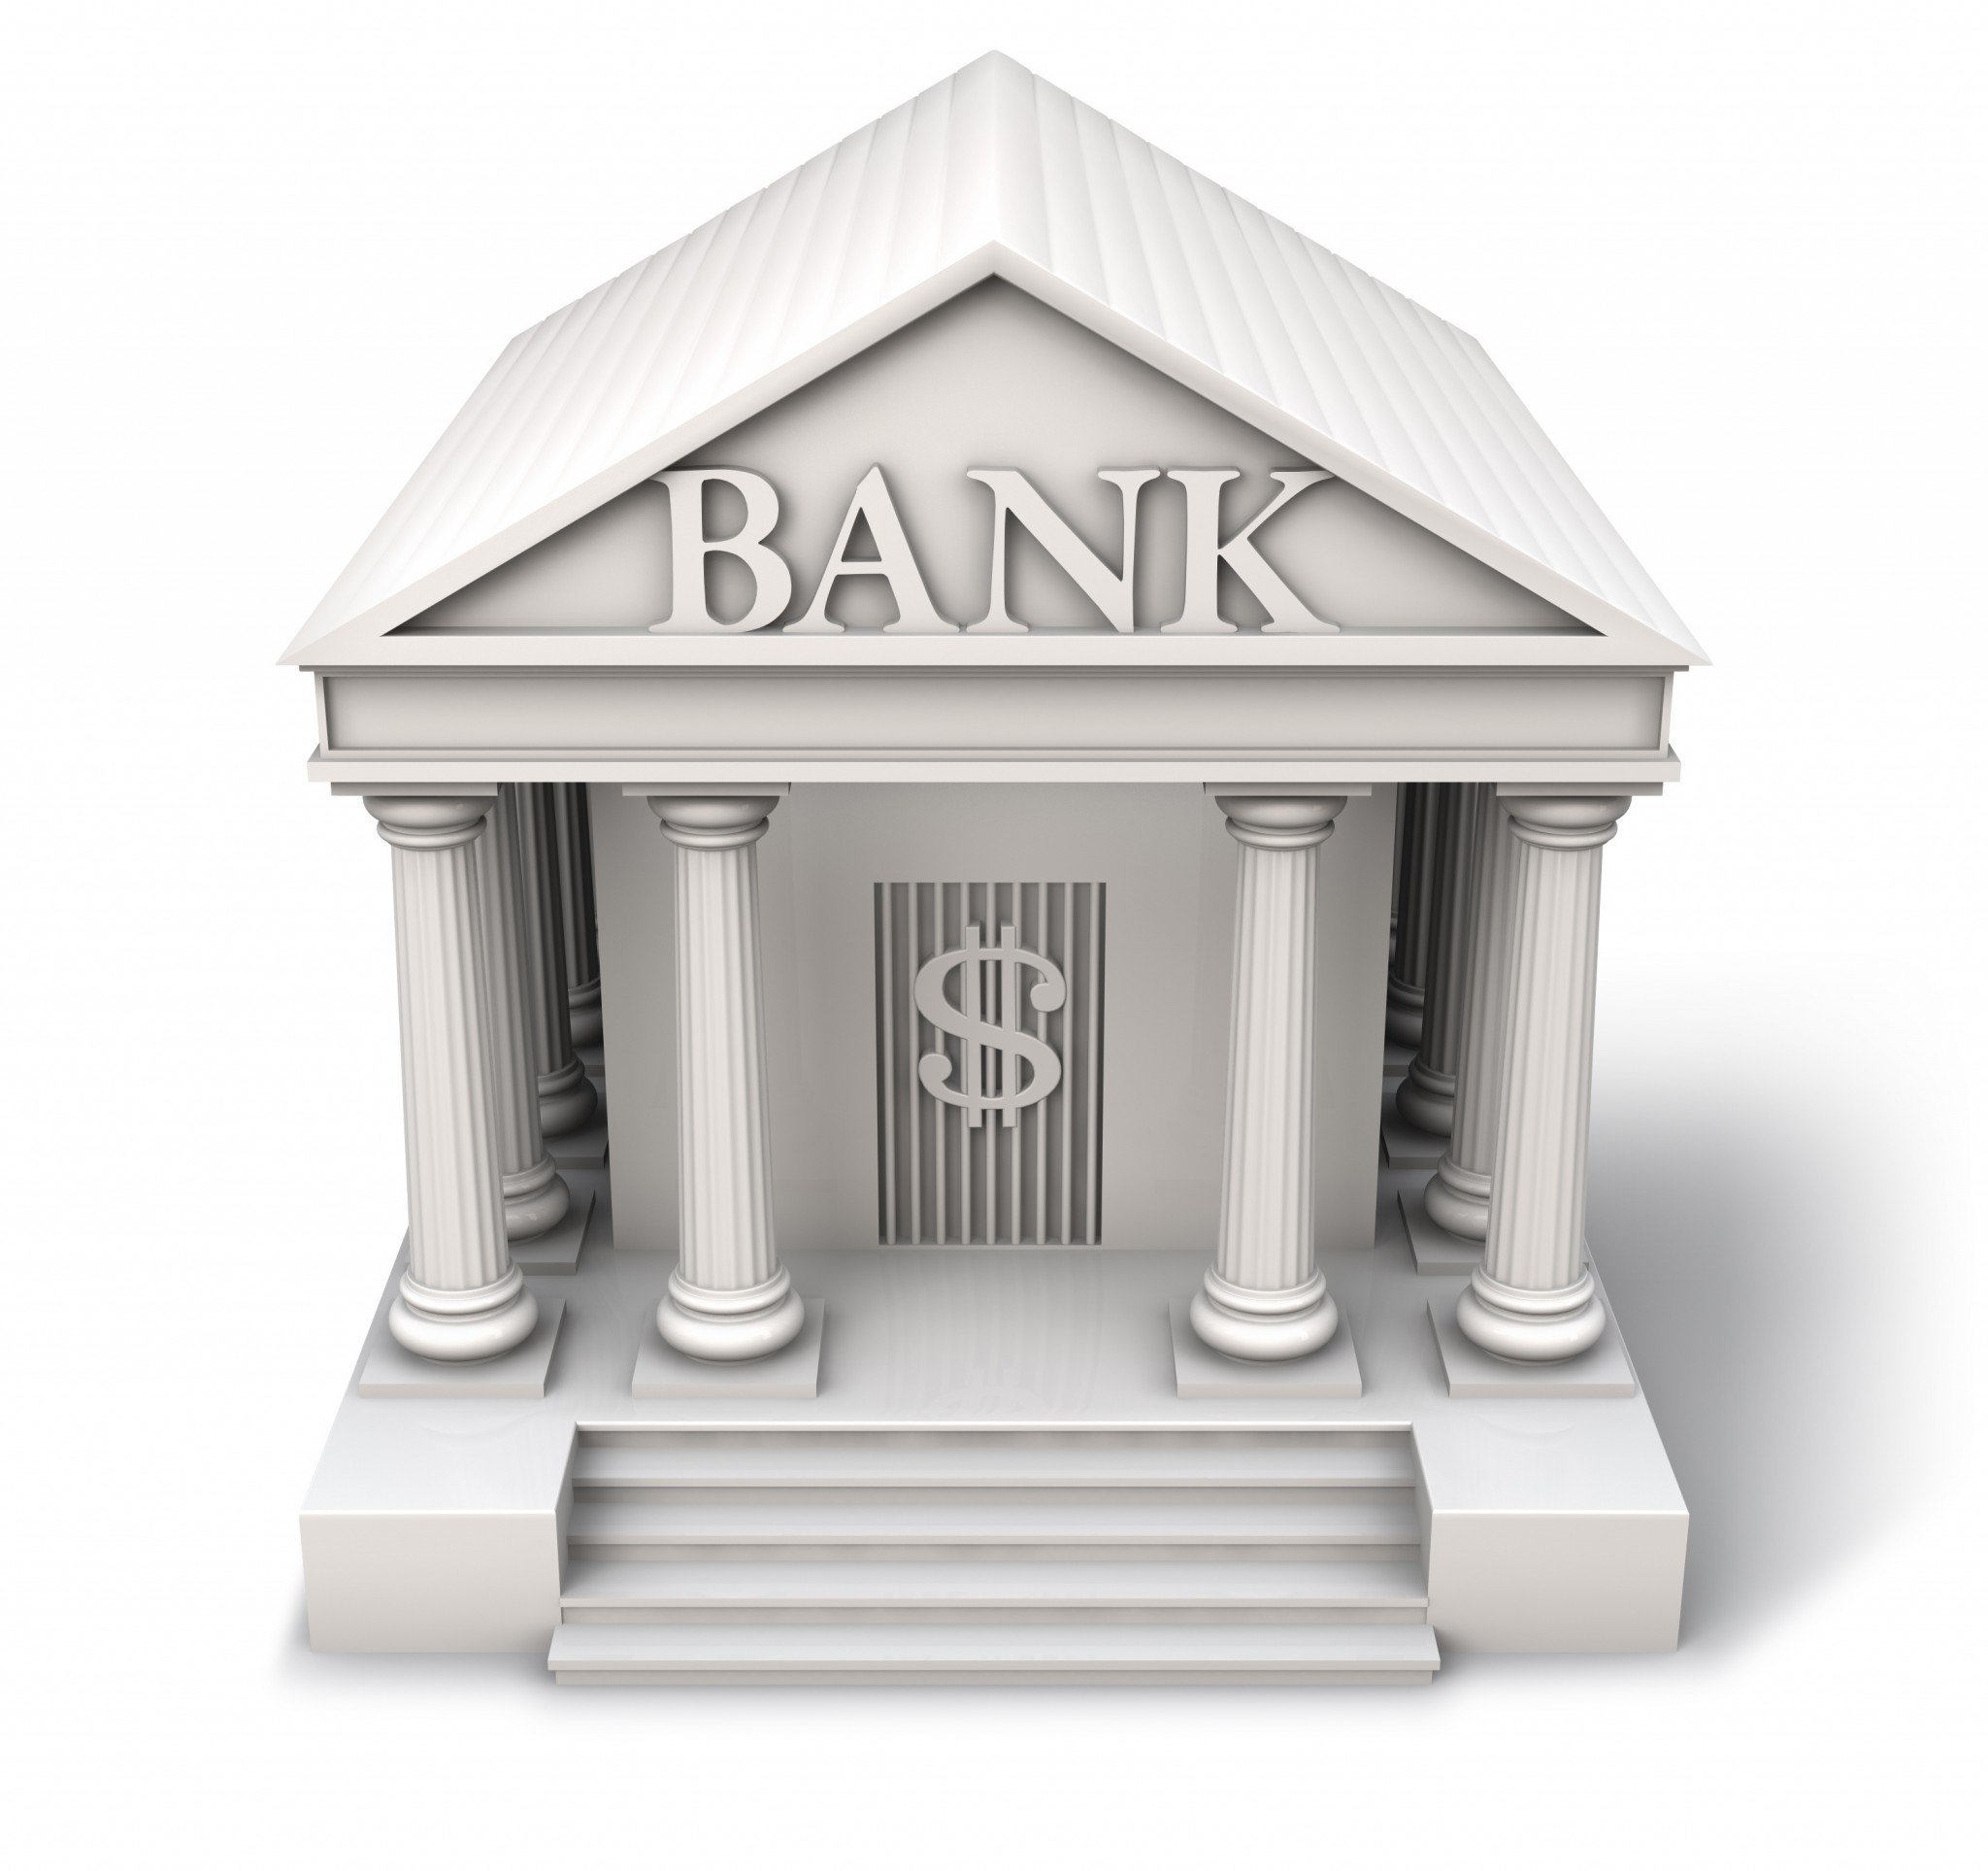 Bank pp. Банк. Здание банка. Банк рисунок. Банк на белом фоне.